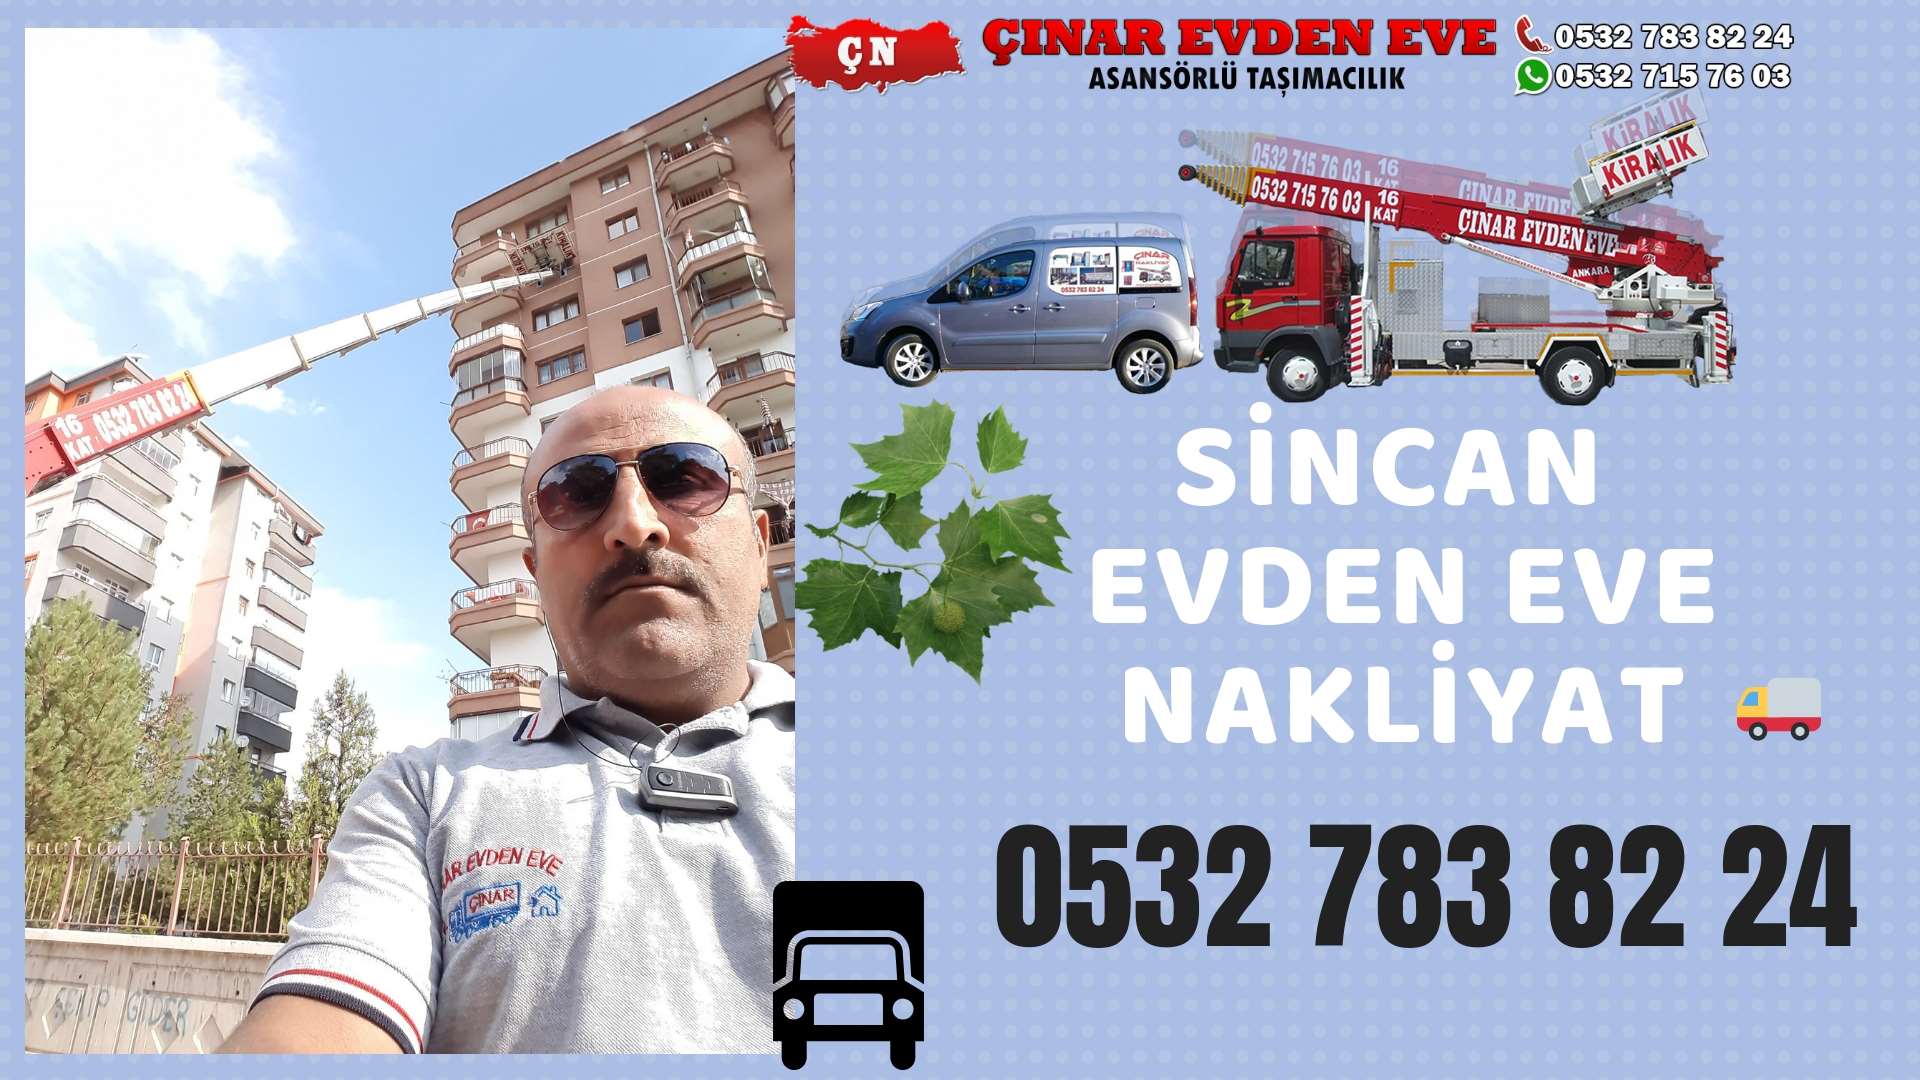 Ankara Kızılcahamam Evden Eve Nakliyat, Asansörlü Taşımacılık, Ofis / İş Yeri Taşıma 0532 715 76 03